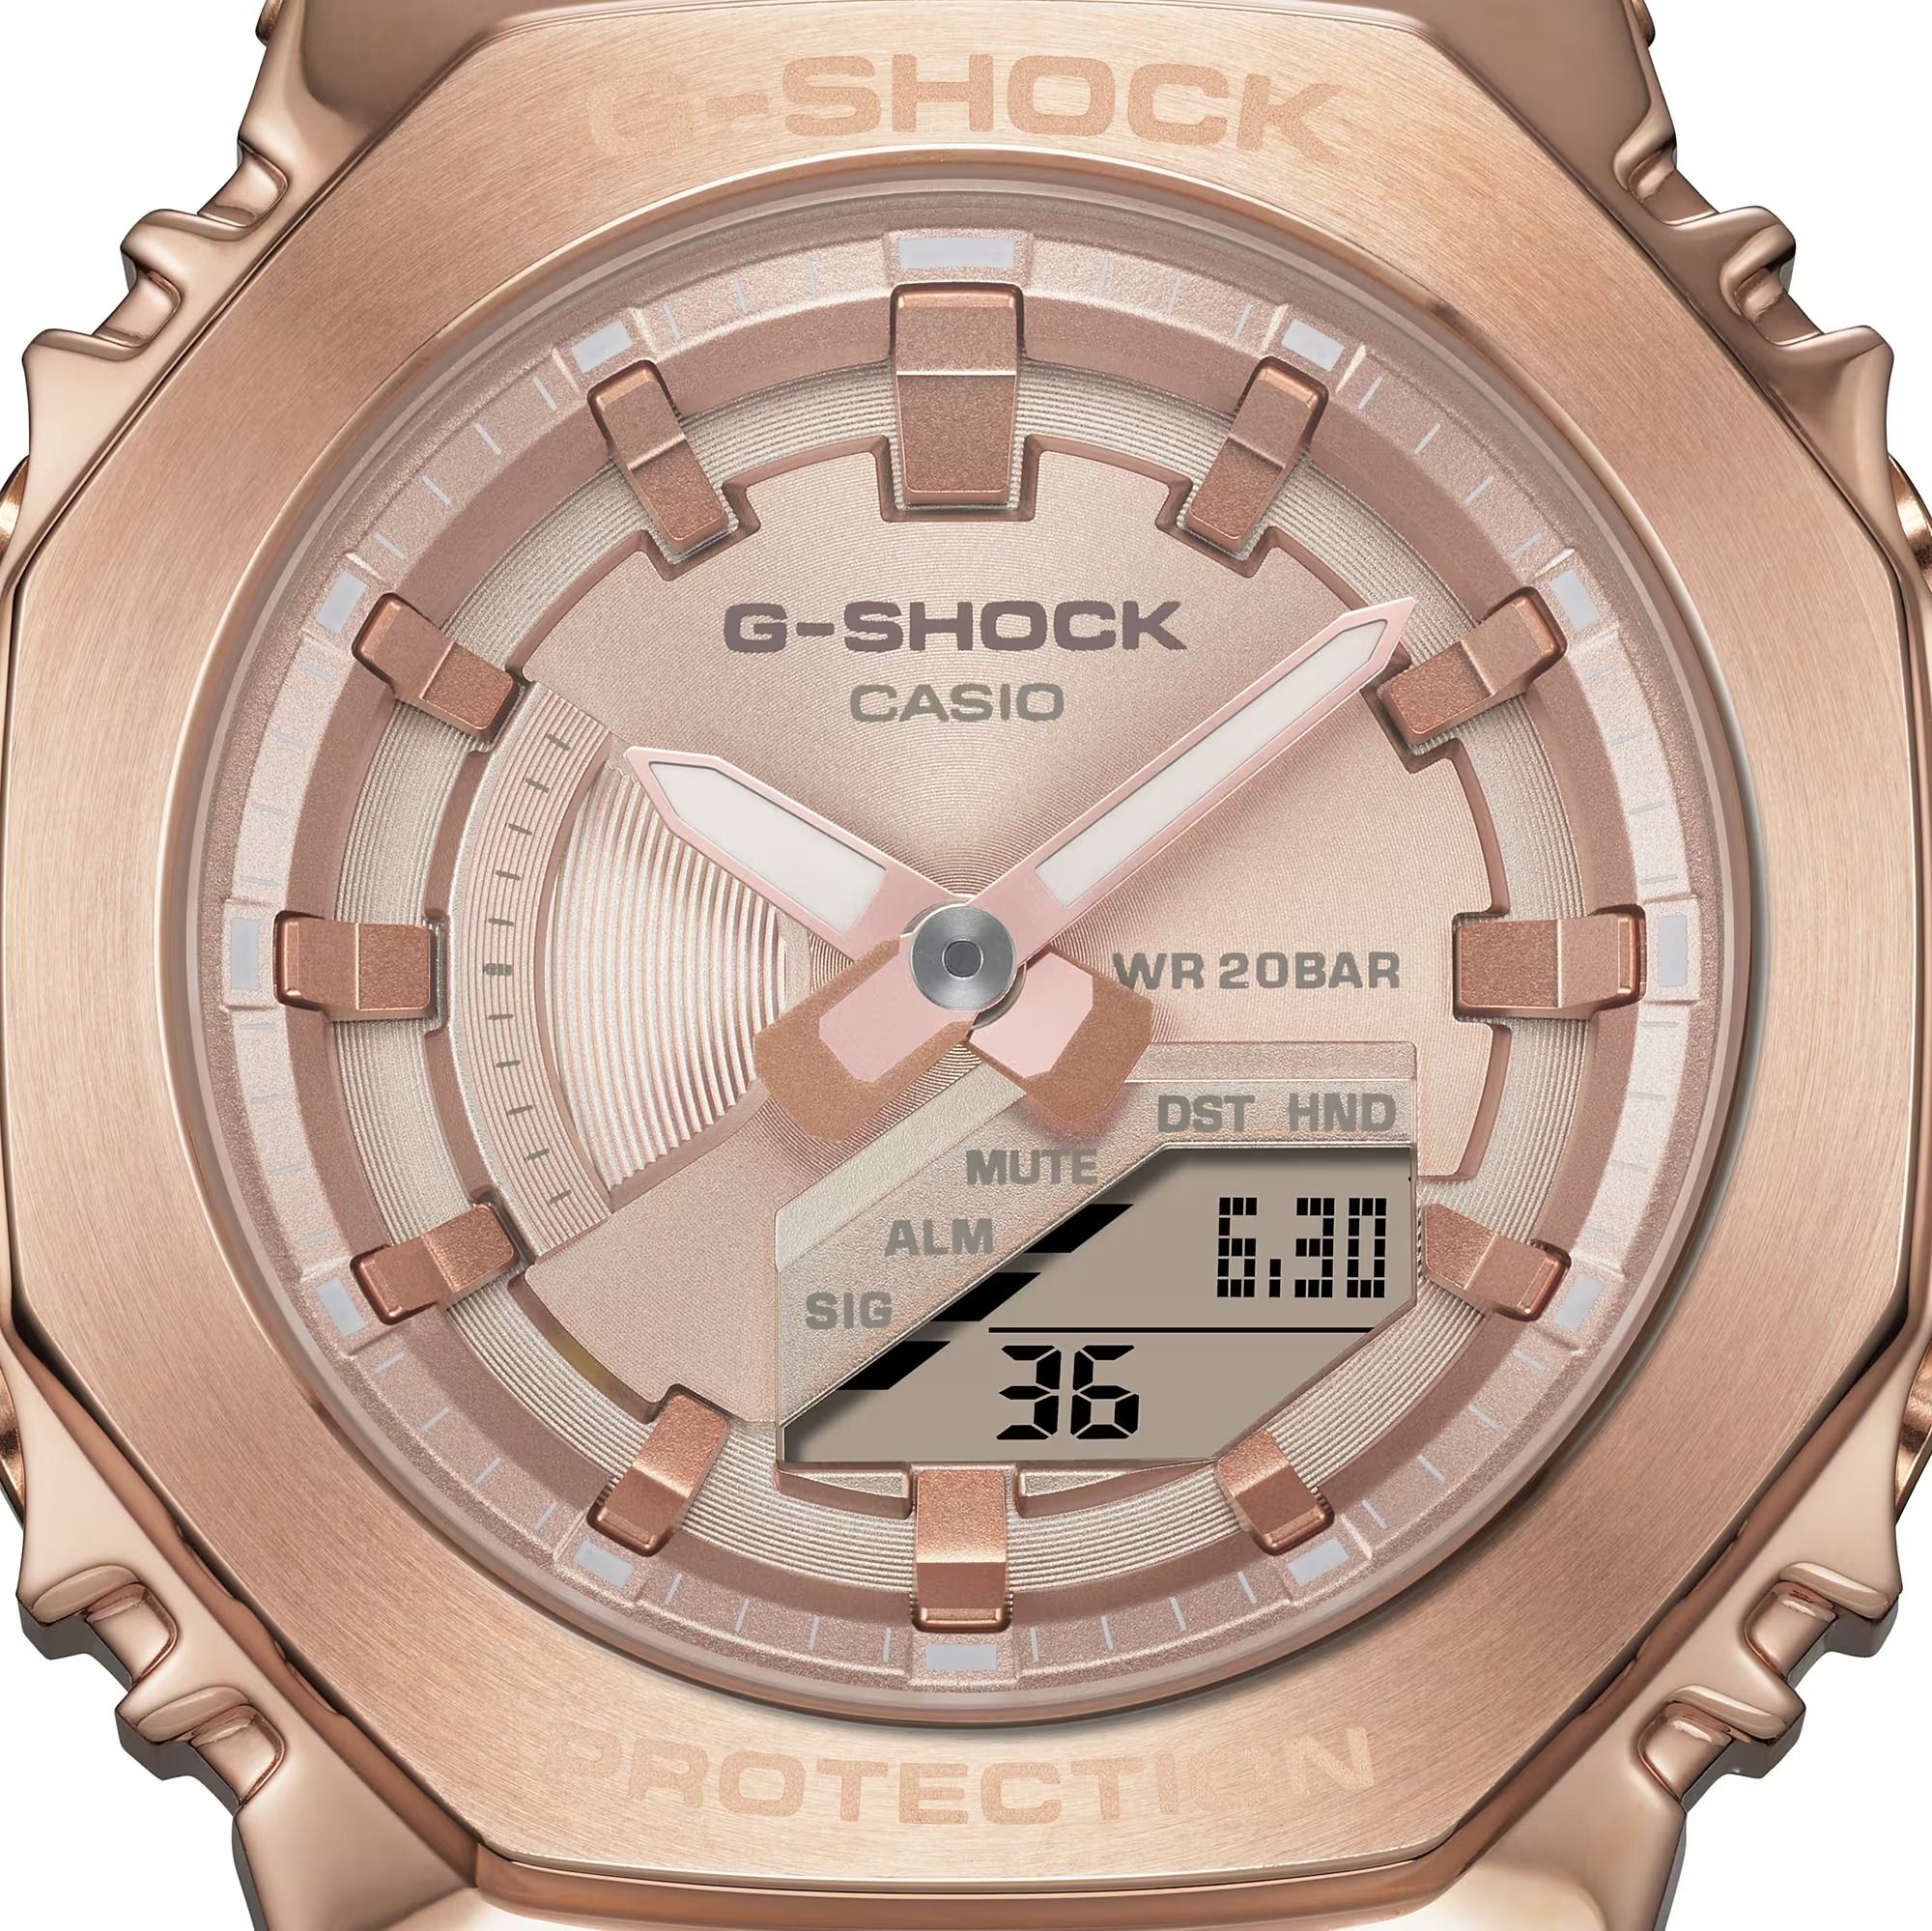  [Uy Tín Từ 2009] GM-S2100PG-4A - Đồng hồ G-Shock Nữ - Tem Vàng Chống Giả 